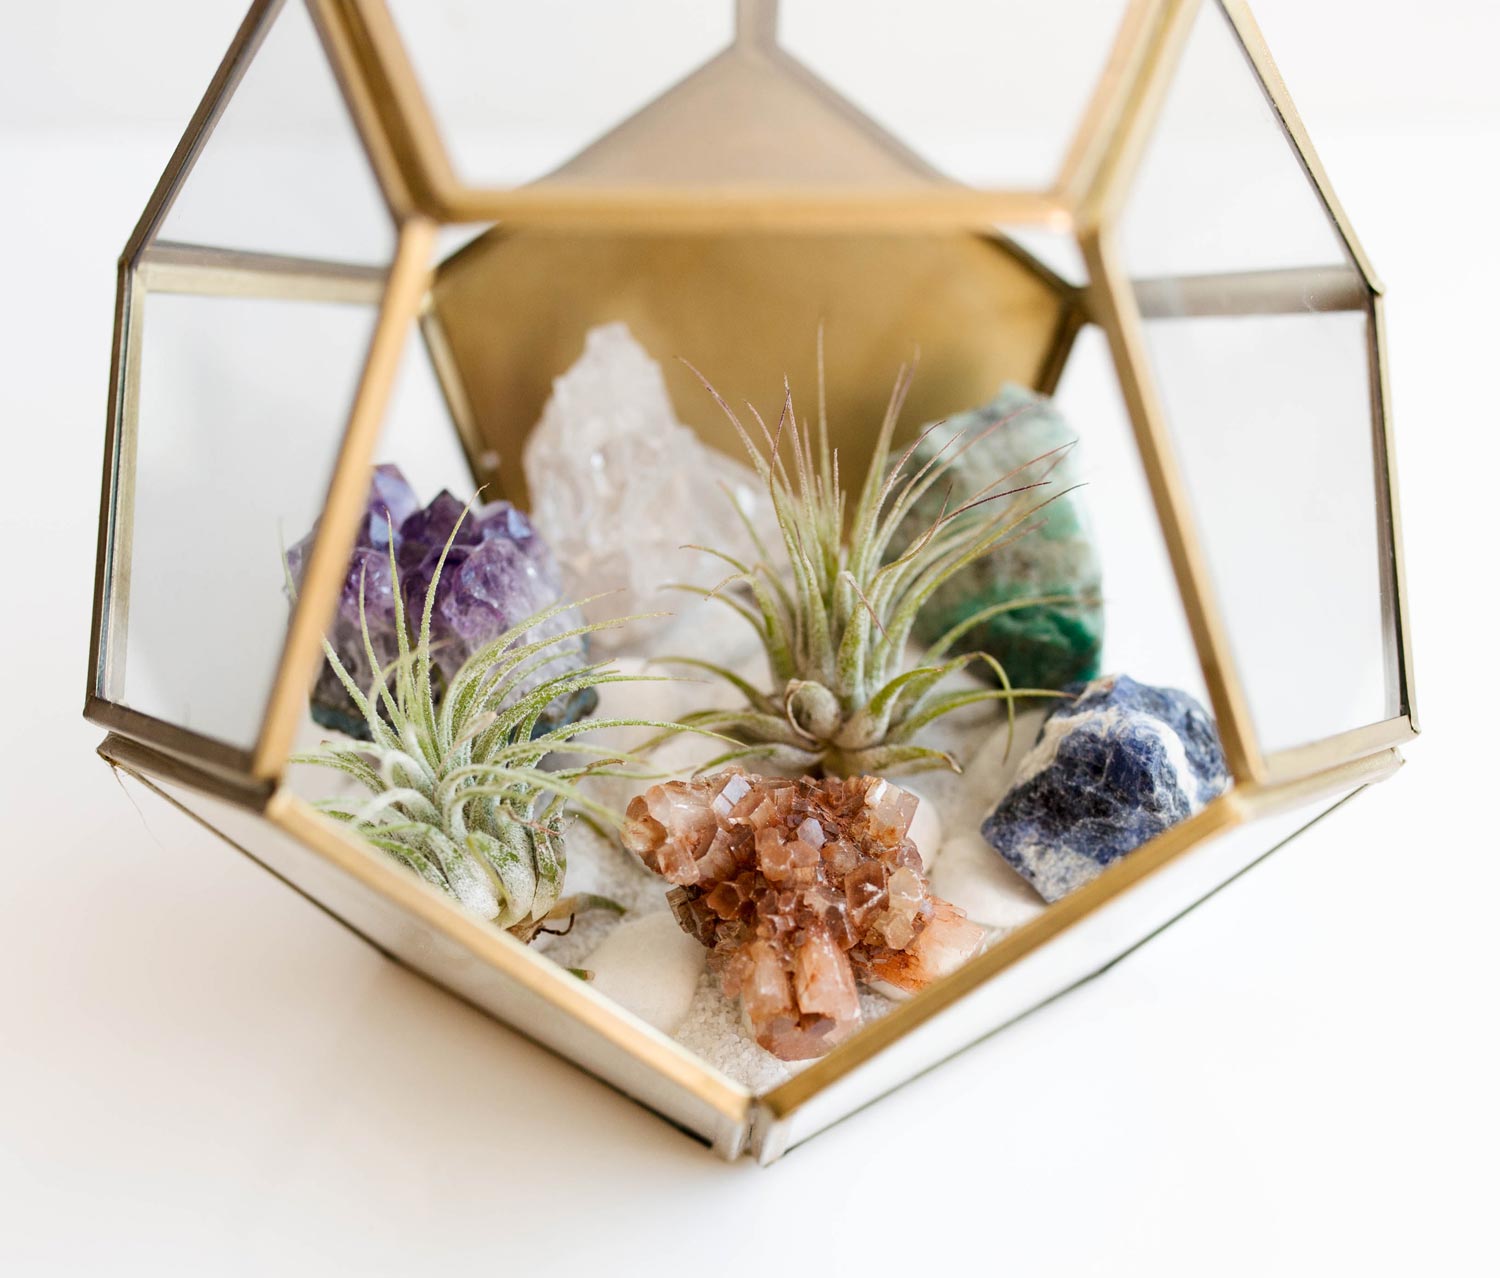 DIY Crystal Terrarium by Dani Barbe